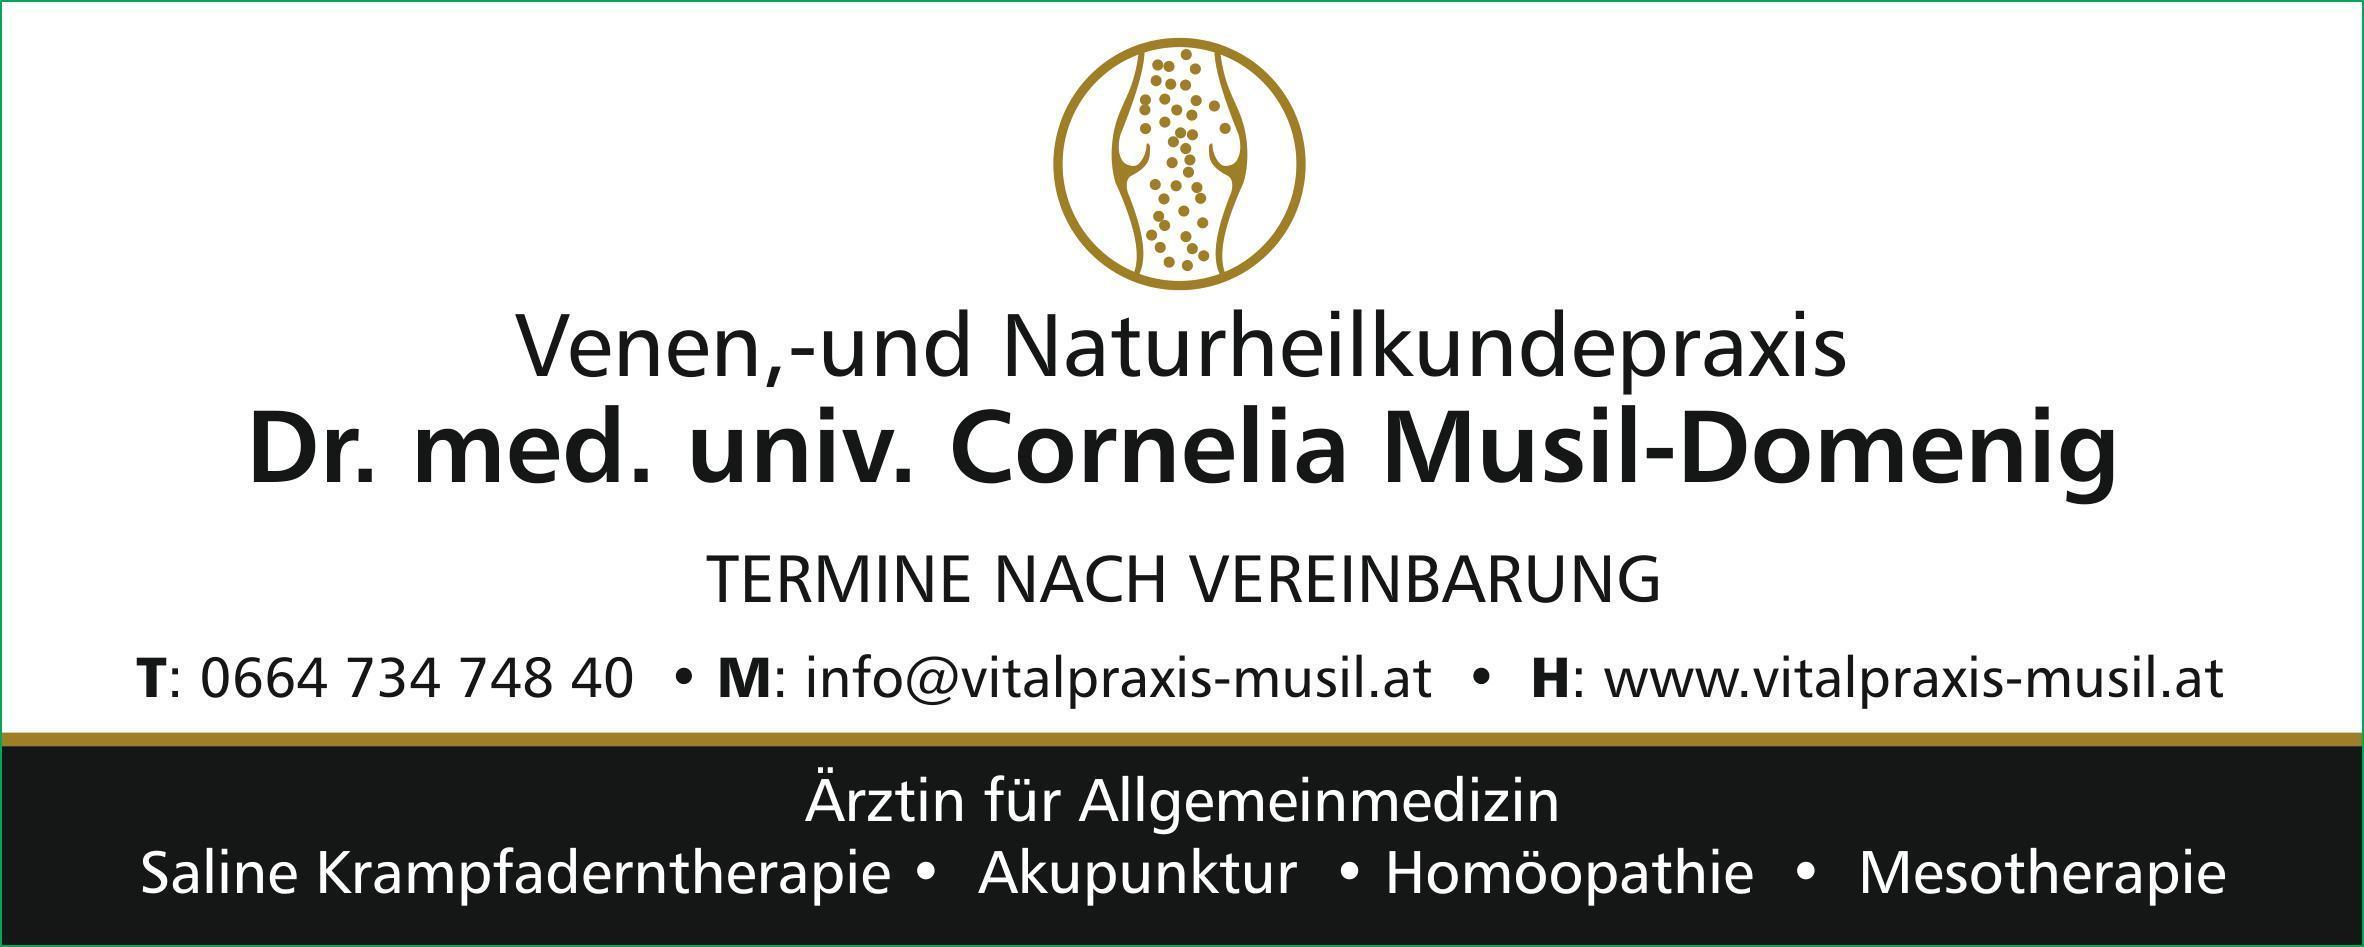 Vorschau - Foto 2 von Venen, -und Naturheilkundepraxis Dr. Cornelia Musil